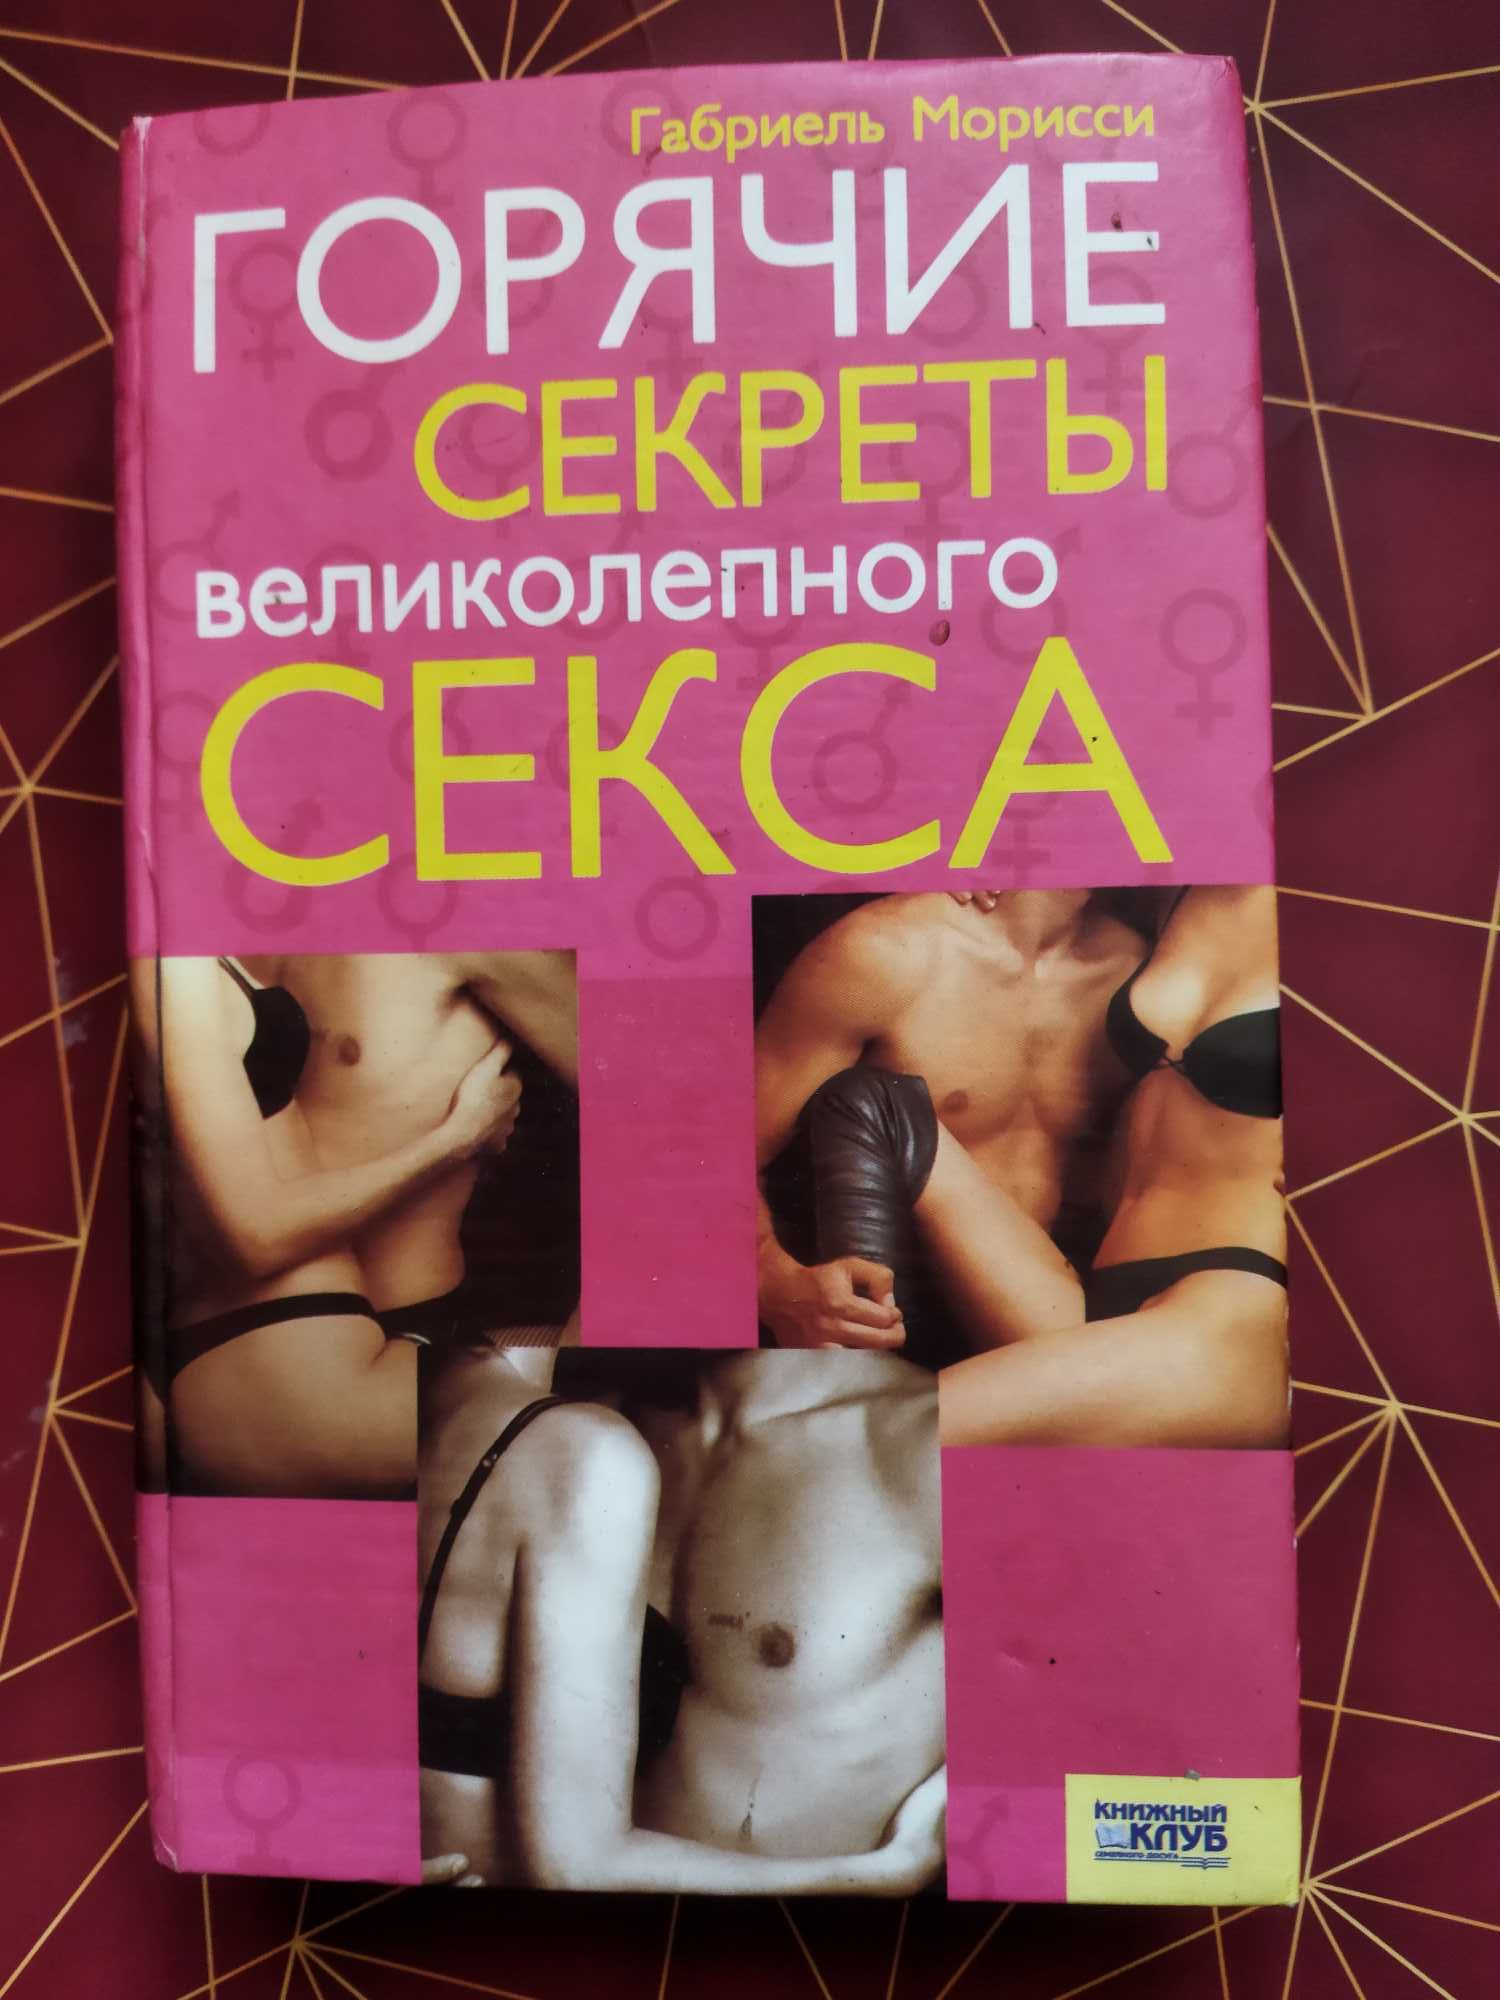 Продам книгу "Горячие секреты великолепного секса"